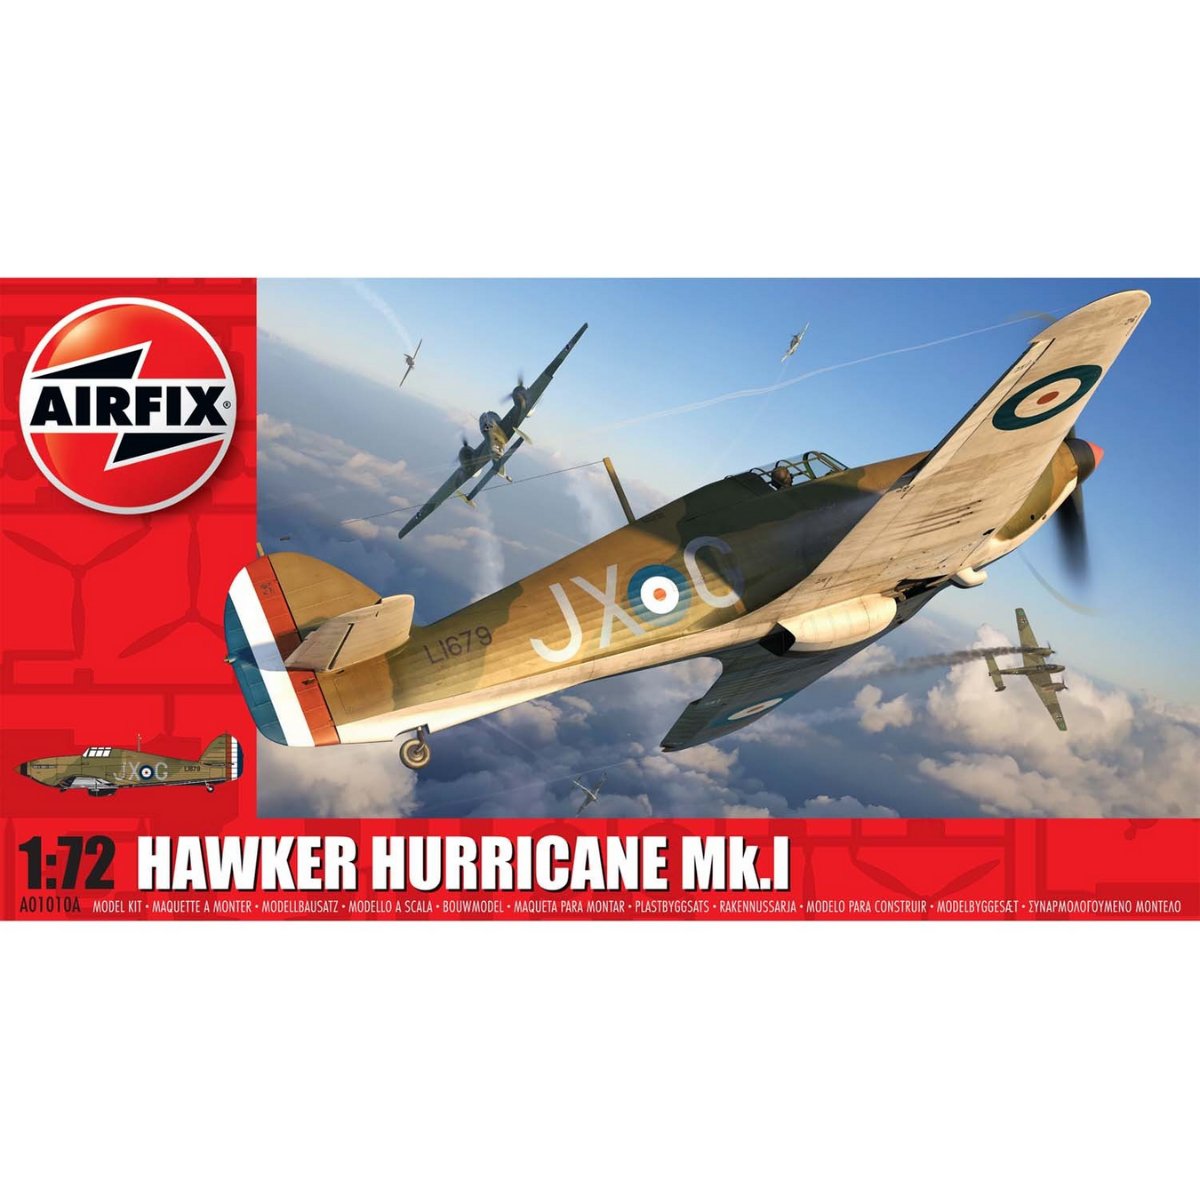 Airfix A01010A Hawker Hurricane Mk.I Aircraft 1:72 - Phillips Hobbies